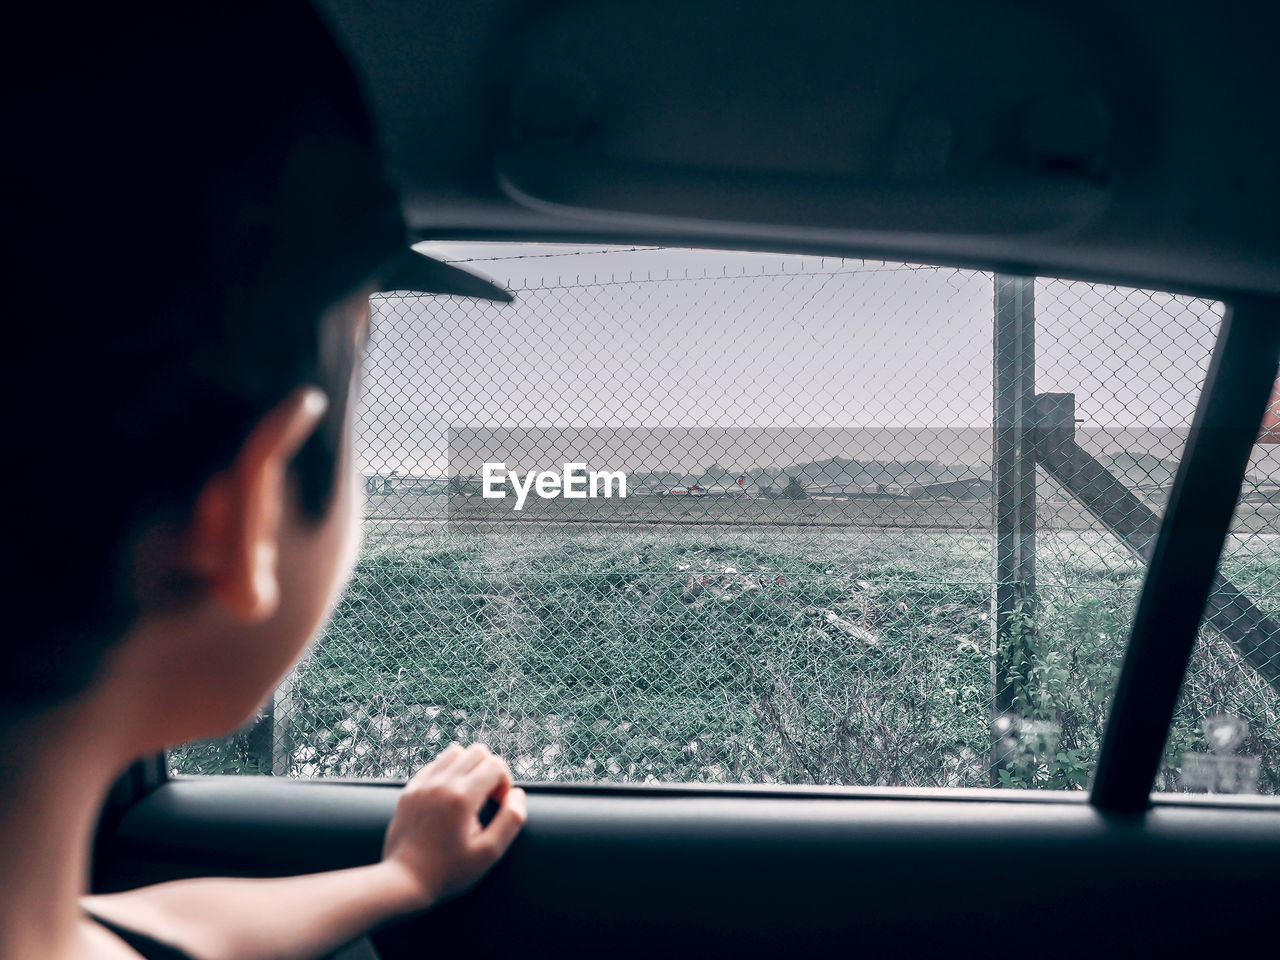 Boy looking through car window